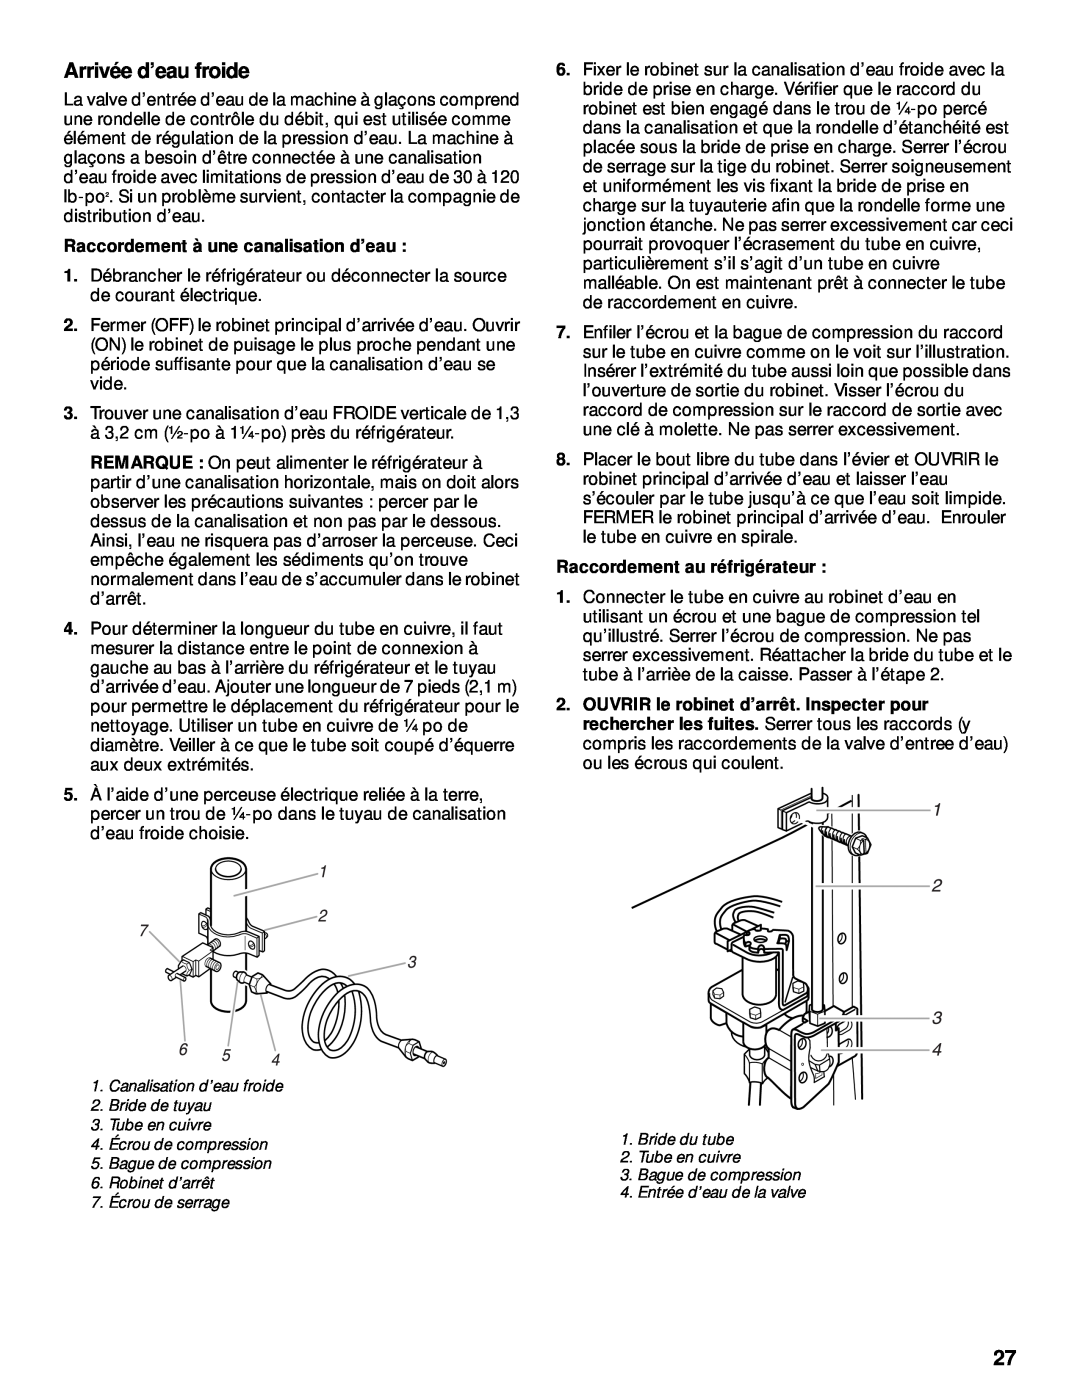 Whirlpool 2199011 manual Arrivée d’eau froide, Raccordement à une canalisation d’eau, Raccordement au réfrigérateur 